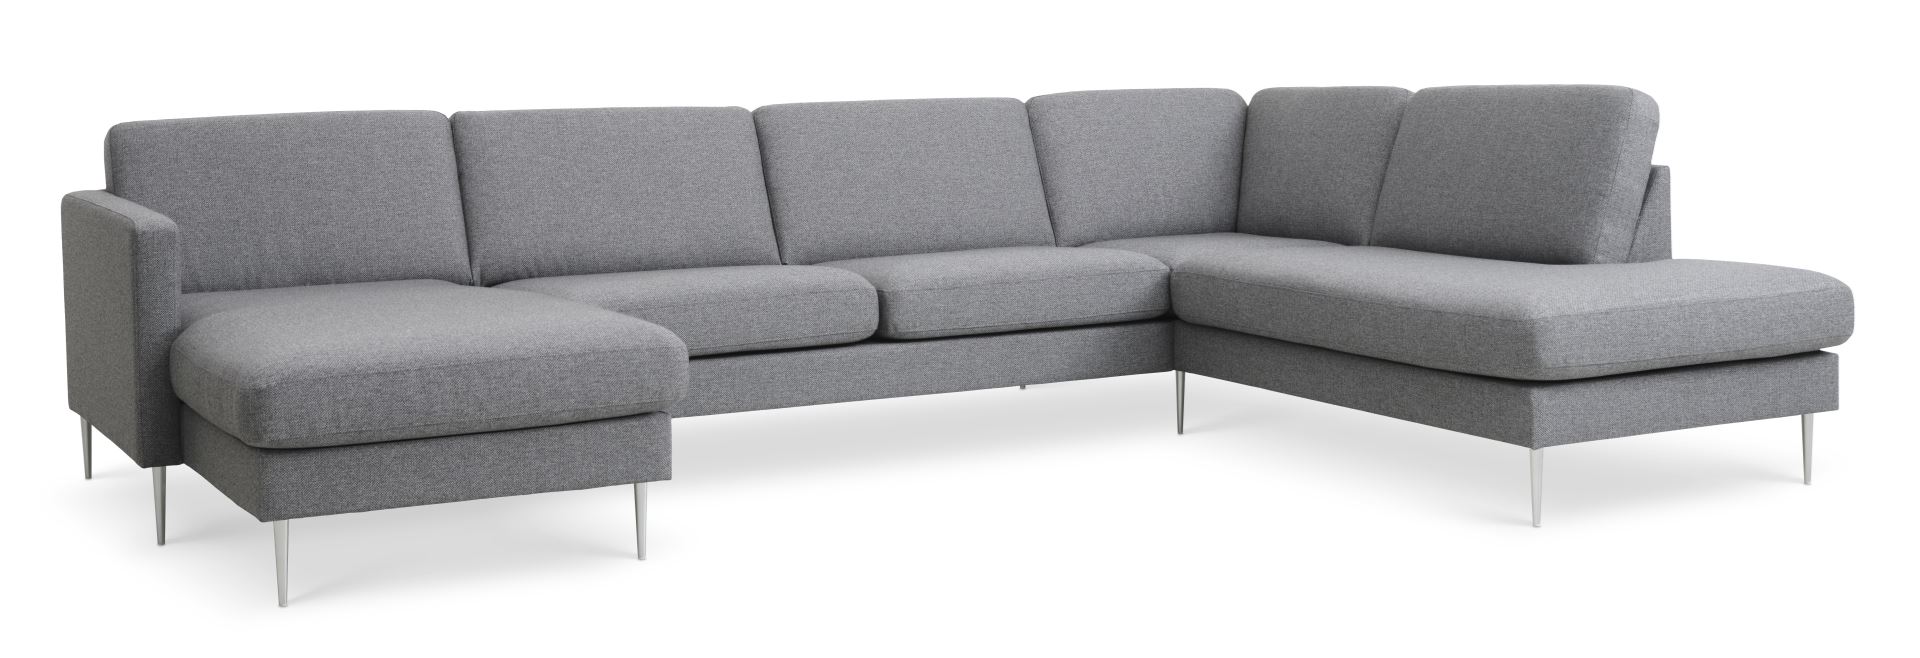 Ask sæt 55 U OE sofa, m. højre chaiselong - lys granitgrå polyester stof og børstet aluminium